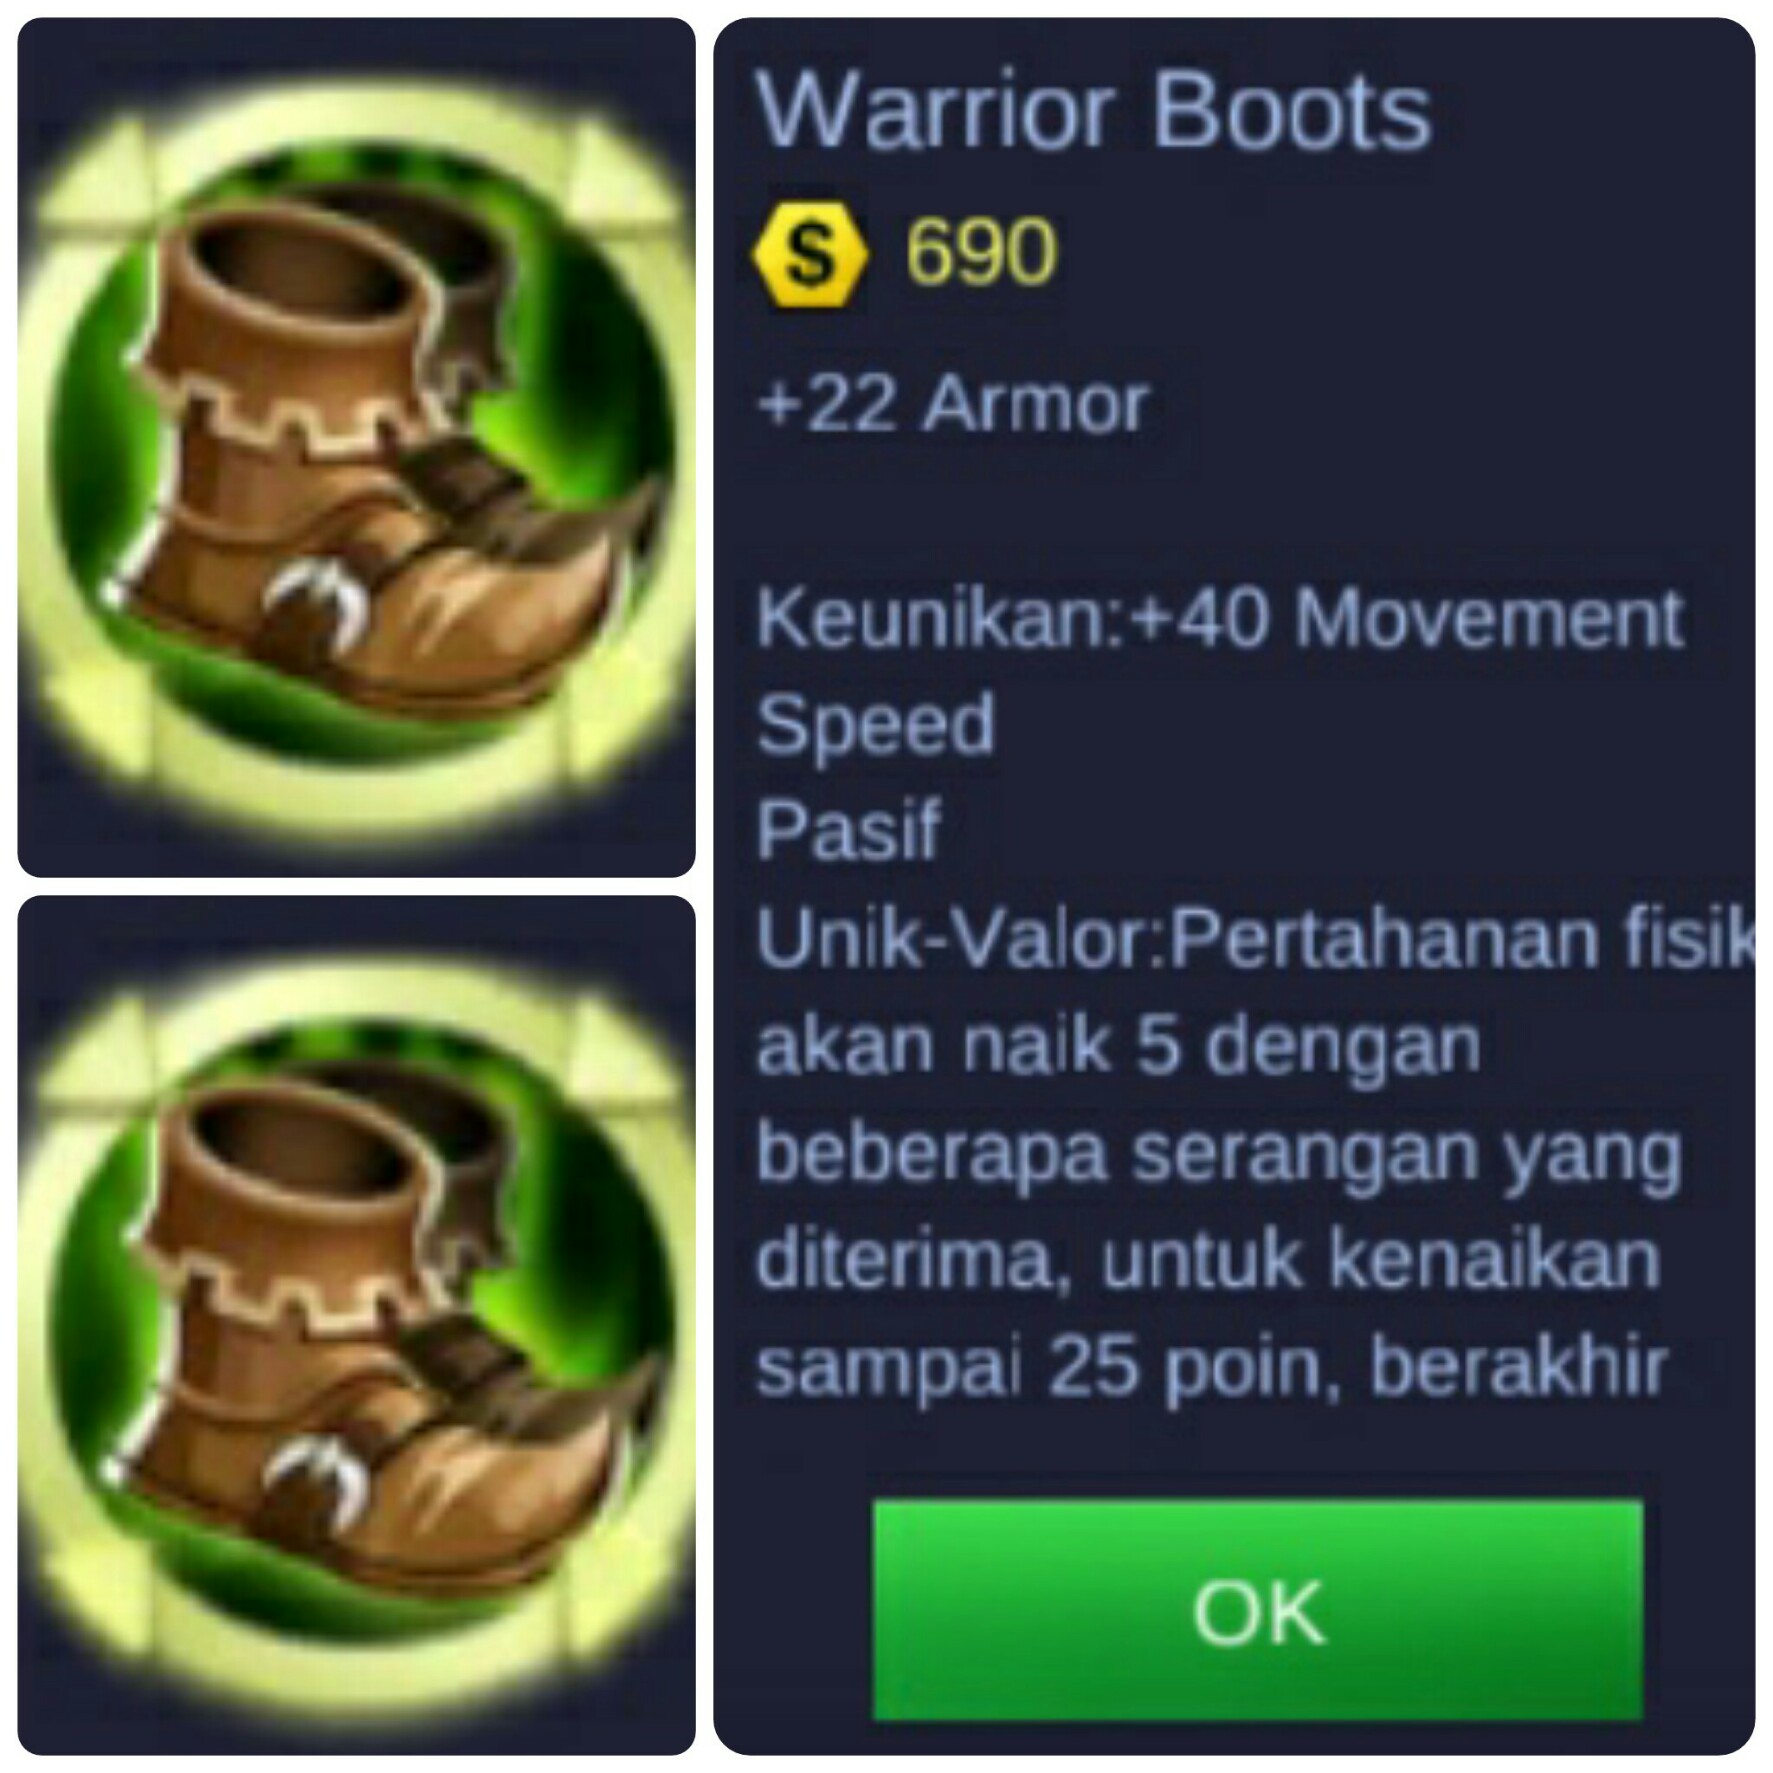 Hasil gambar untuk warrior boots ml